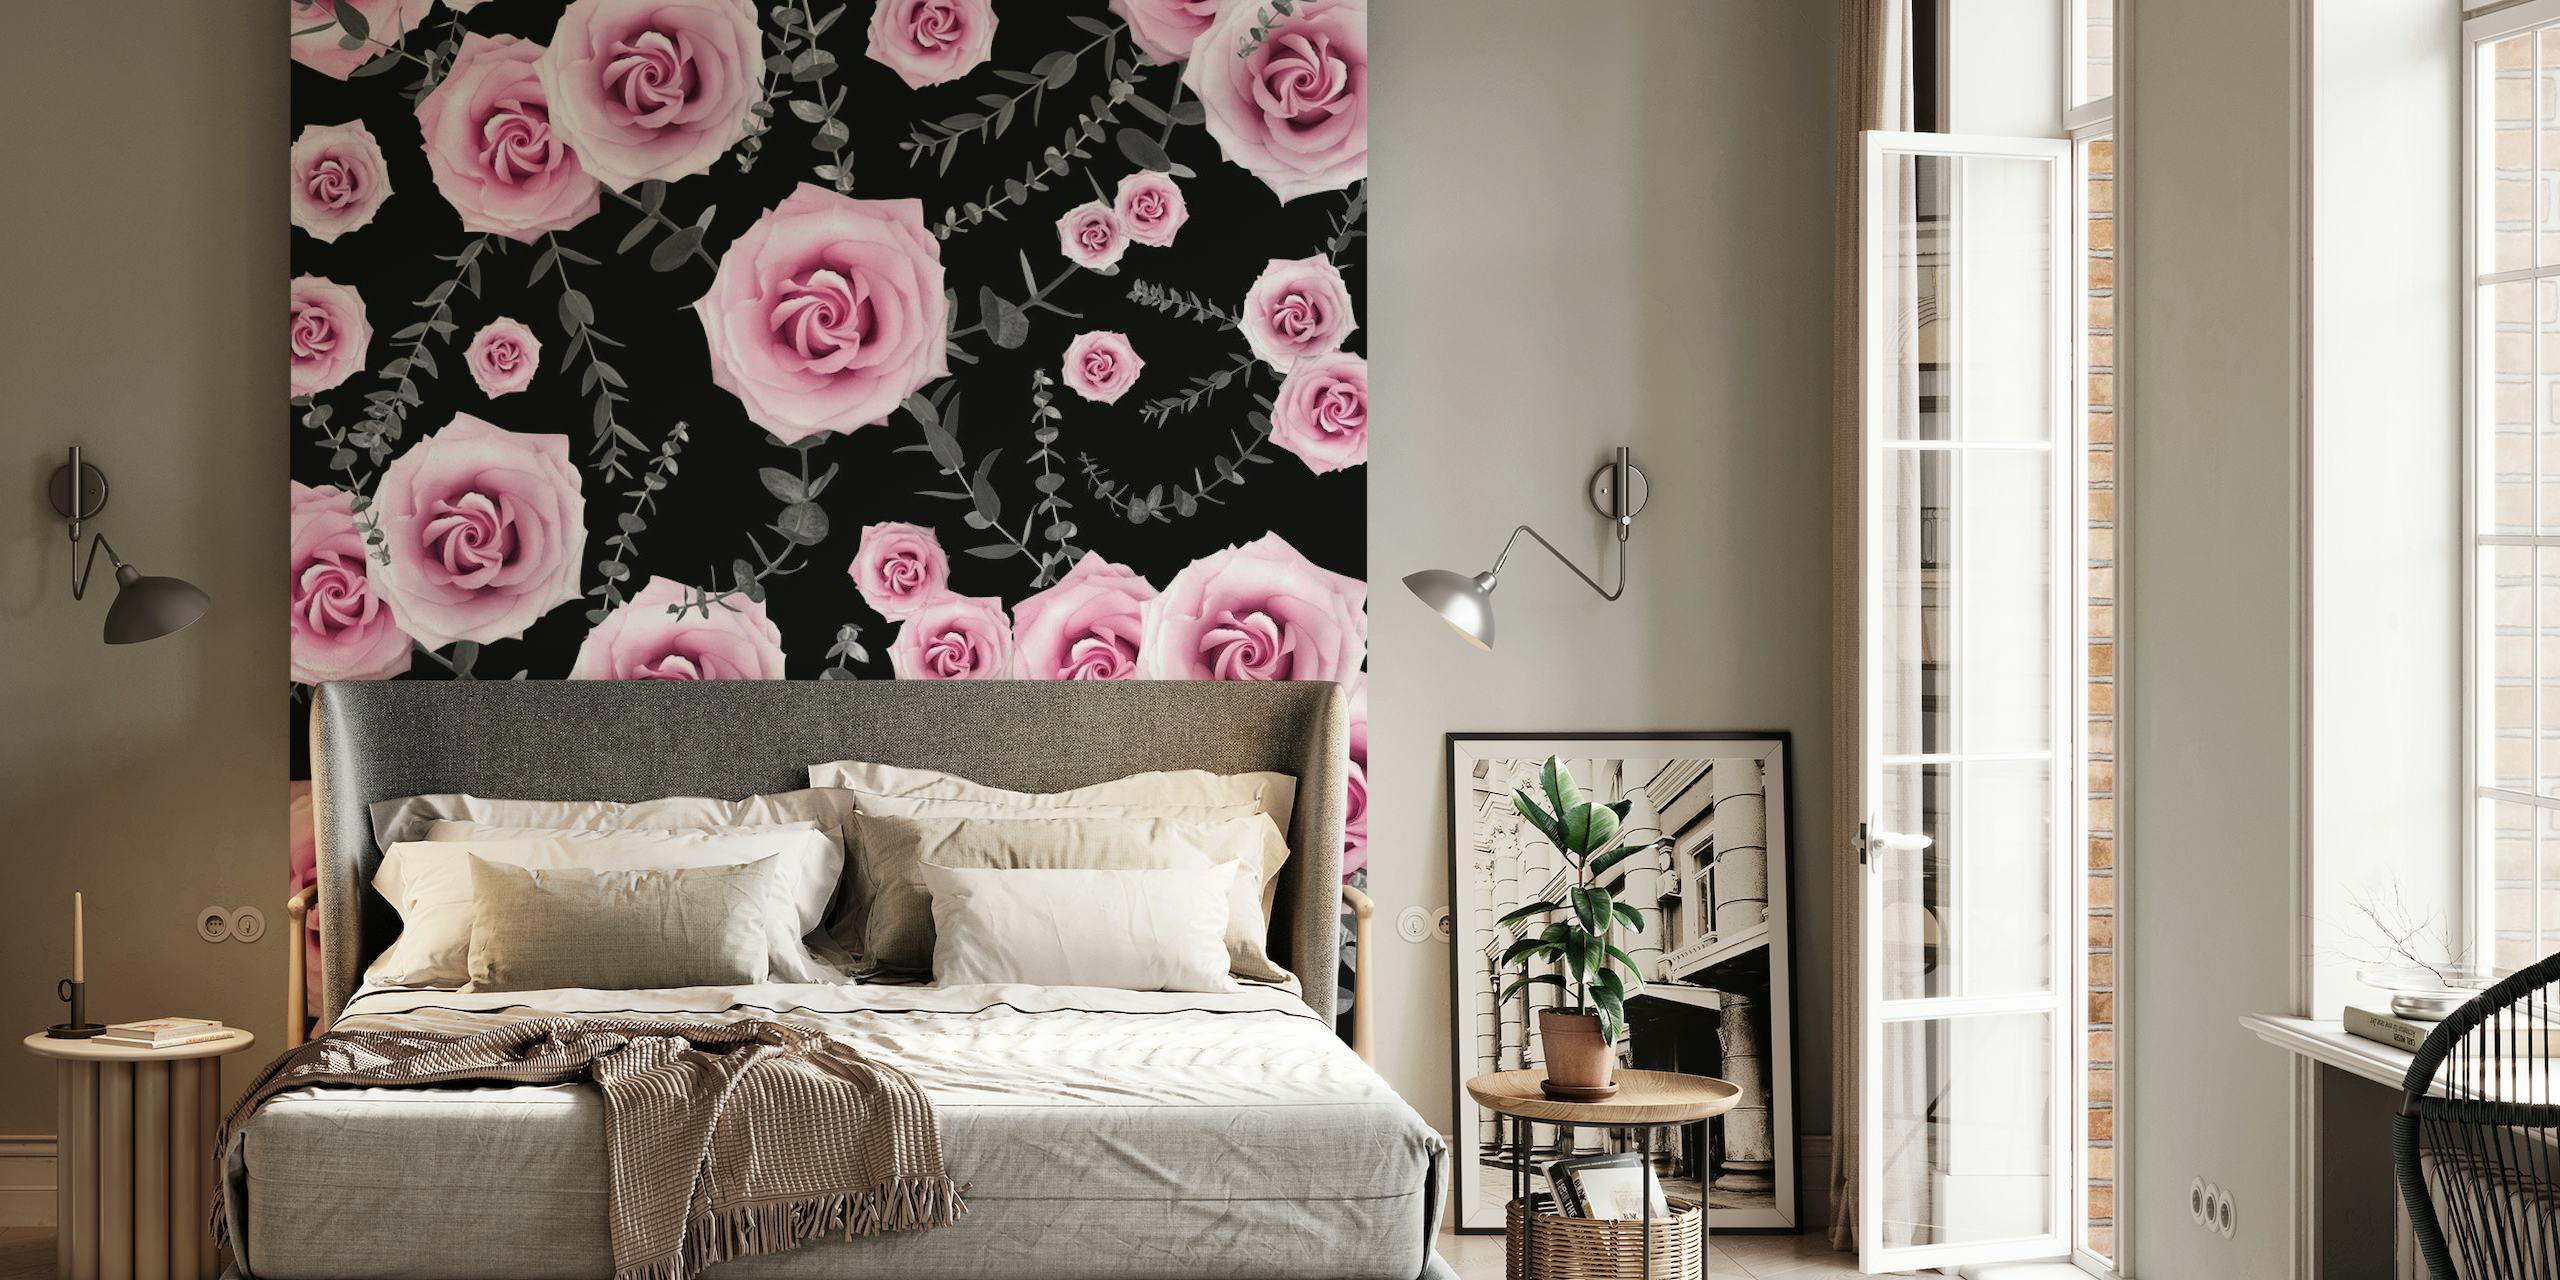 Fototapete mit rosa Rosen und Eukalyptusmuster auf dunklem Hintergrund